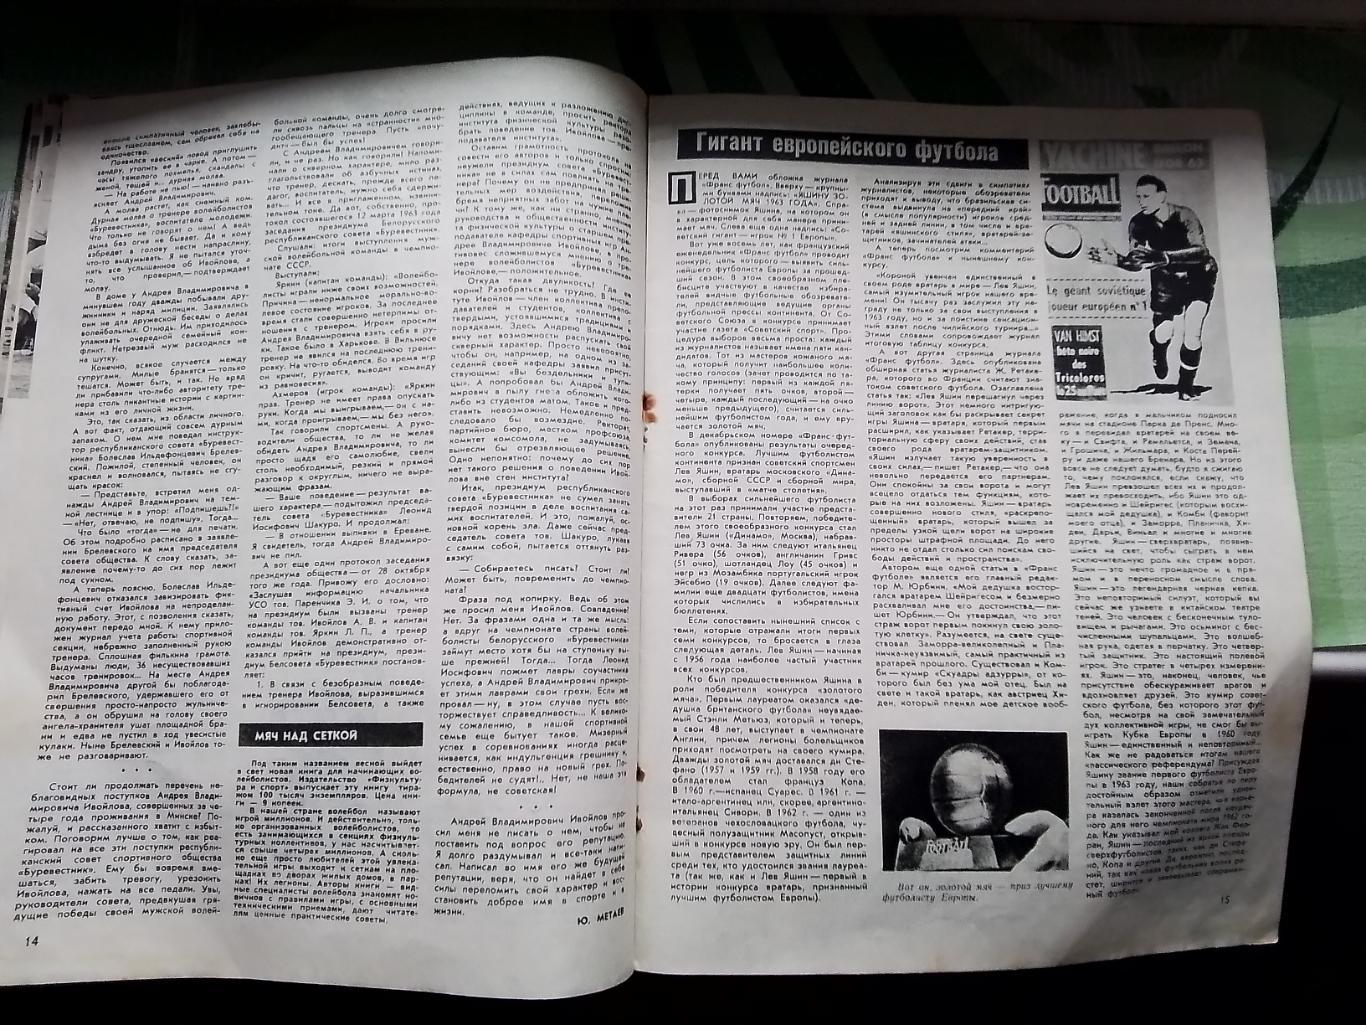 Журнал Спортивные игры 1964 N 1 Таблицы шахматки класса Б и чемпа по гандболу 5